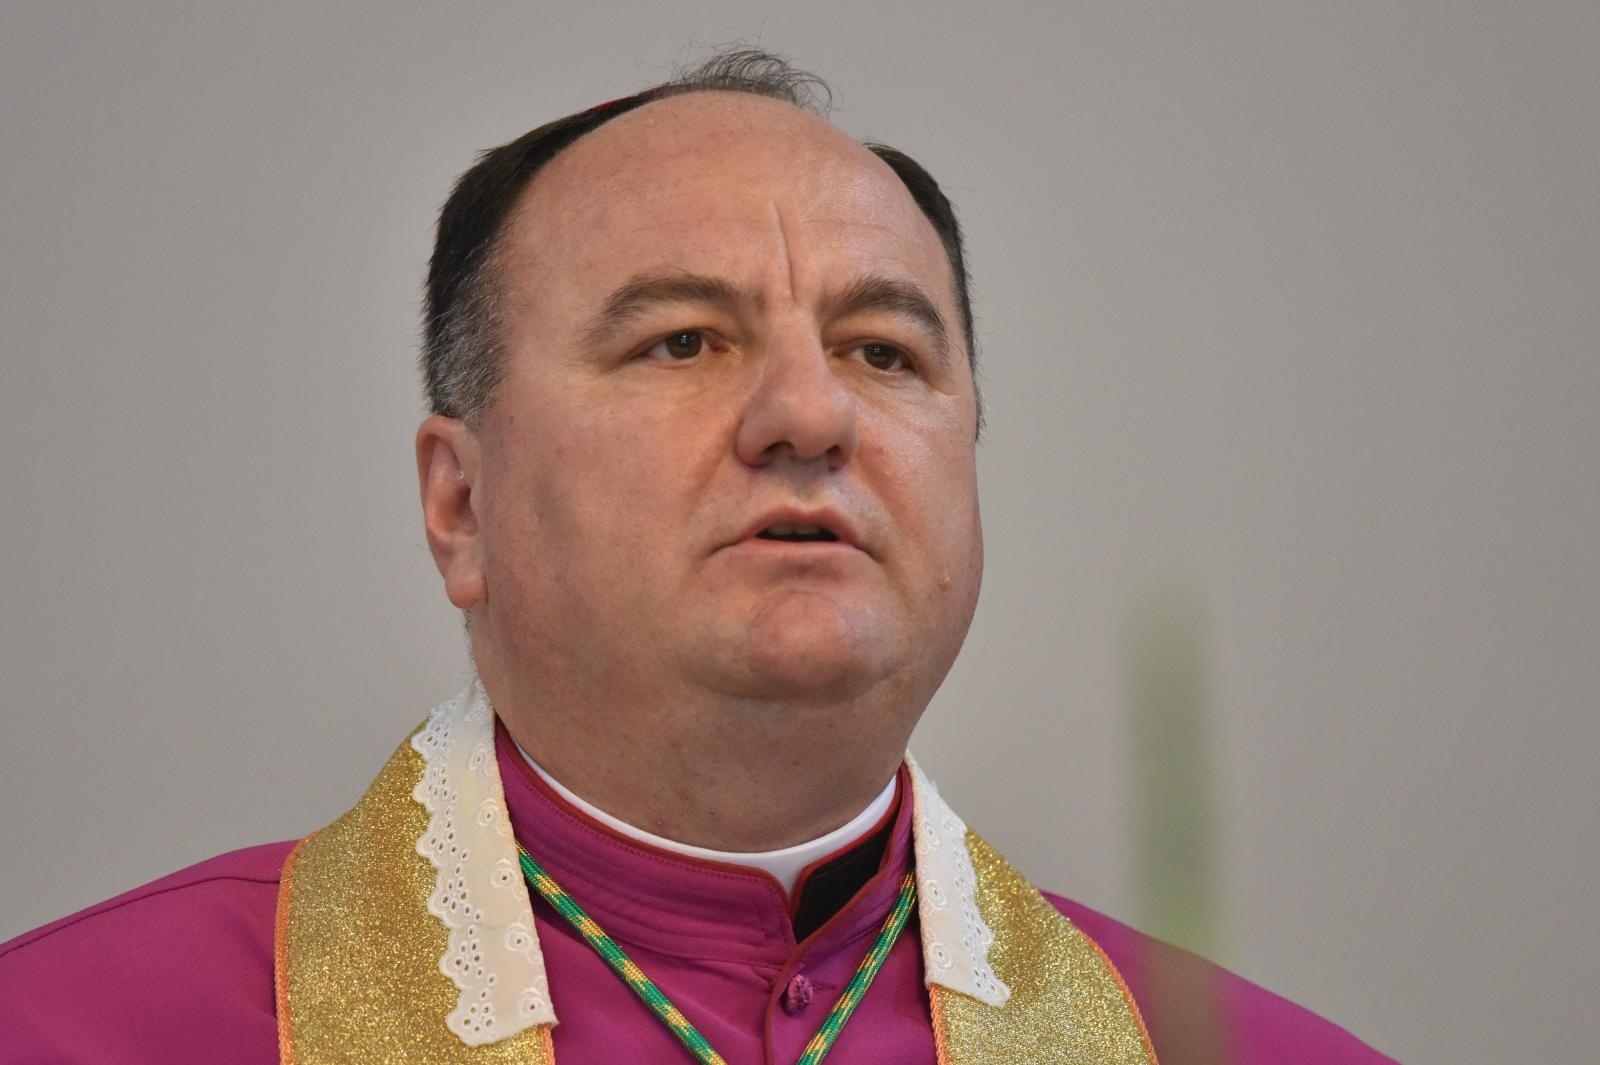 08.05.2018., Kistanje - Novi hvarski biskup Petar Palic. Photo: Hrvoje Jelavic/PIXSELL